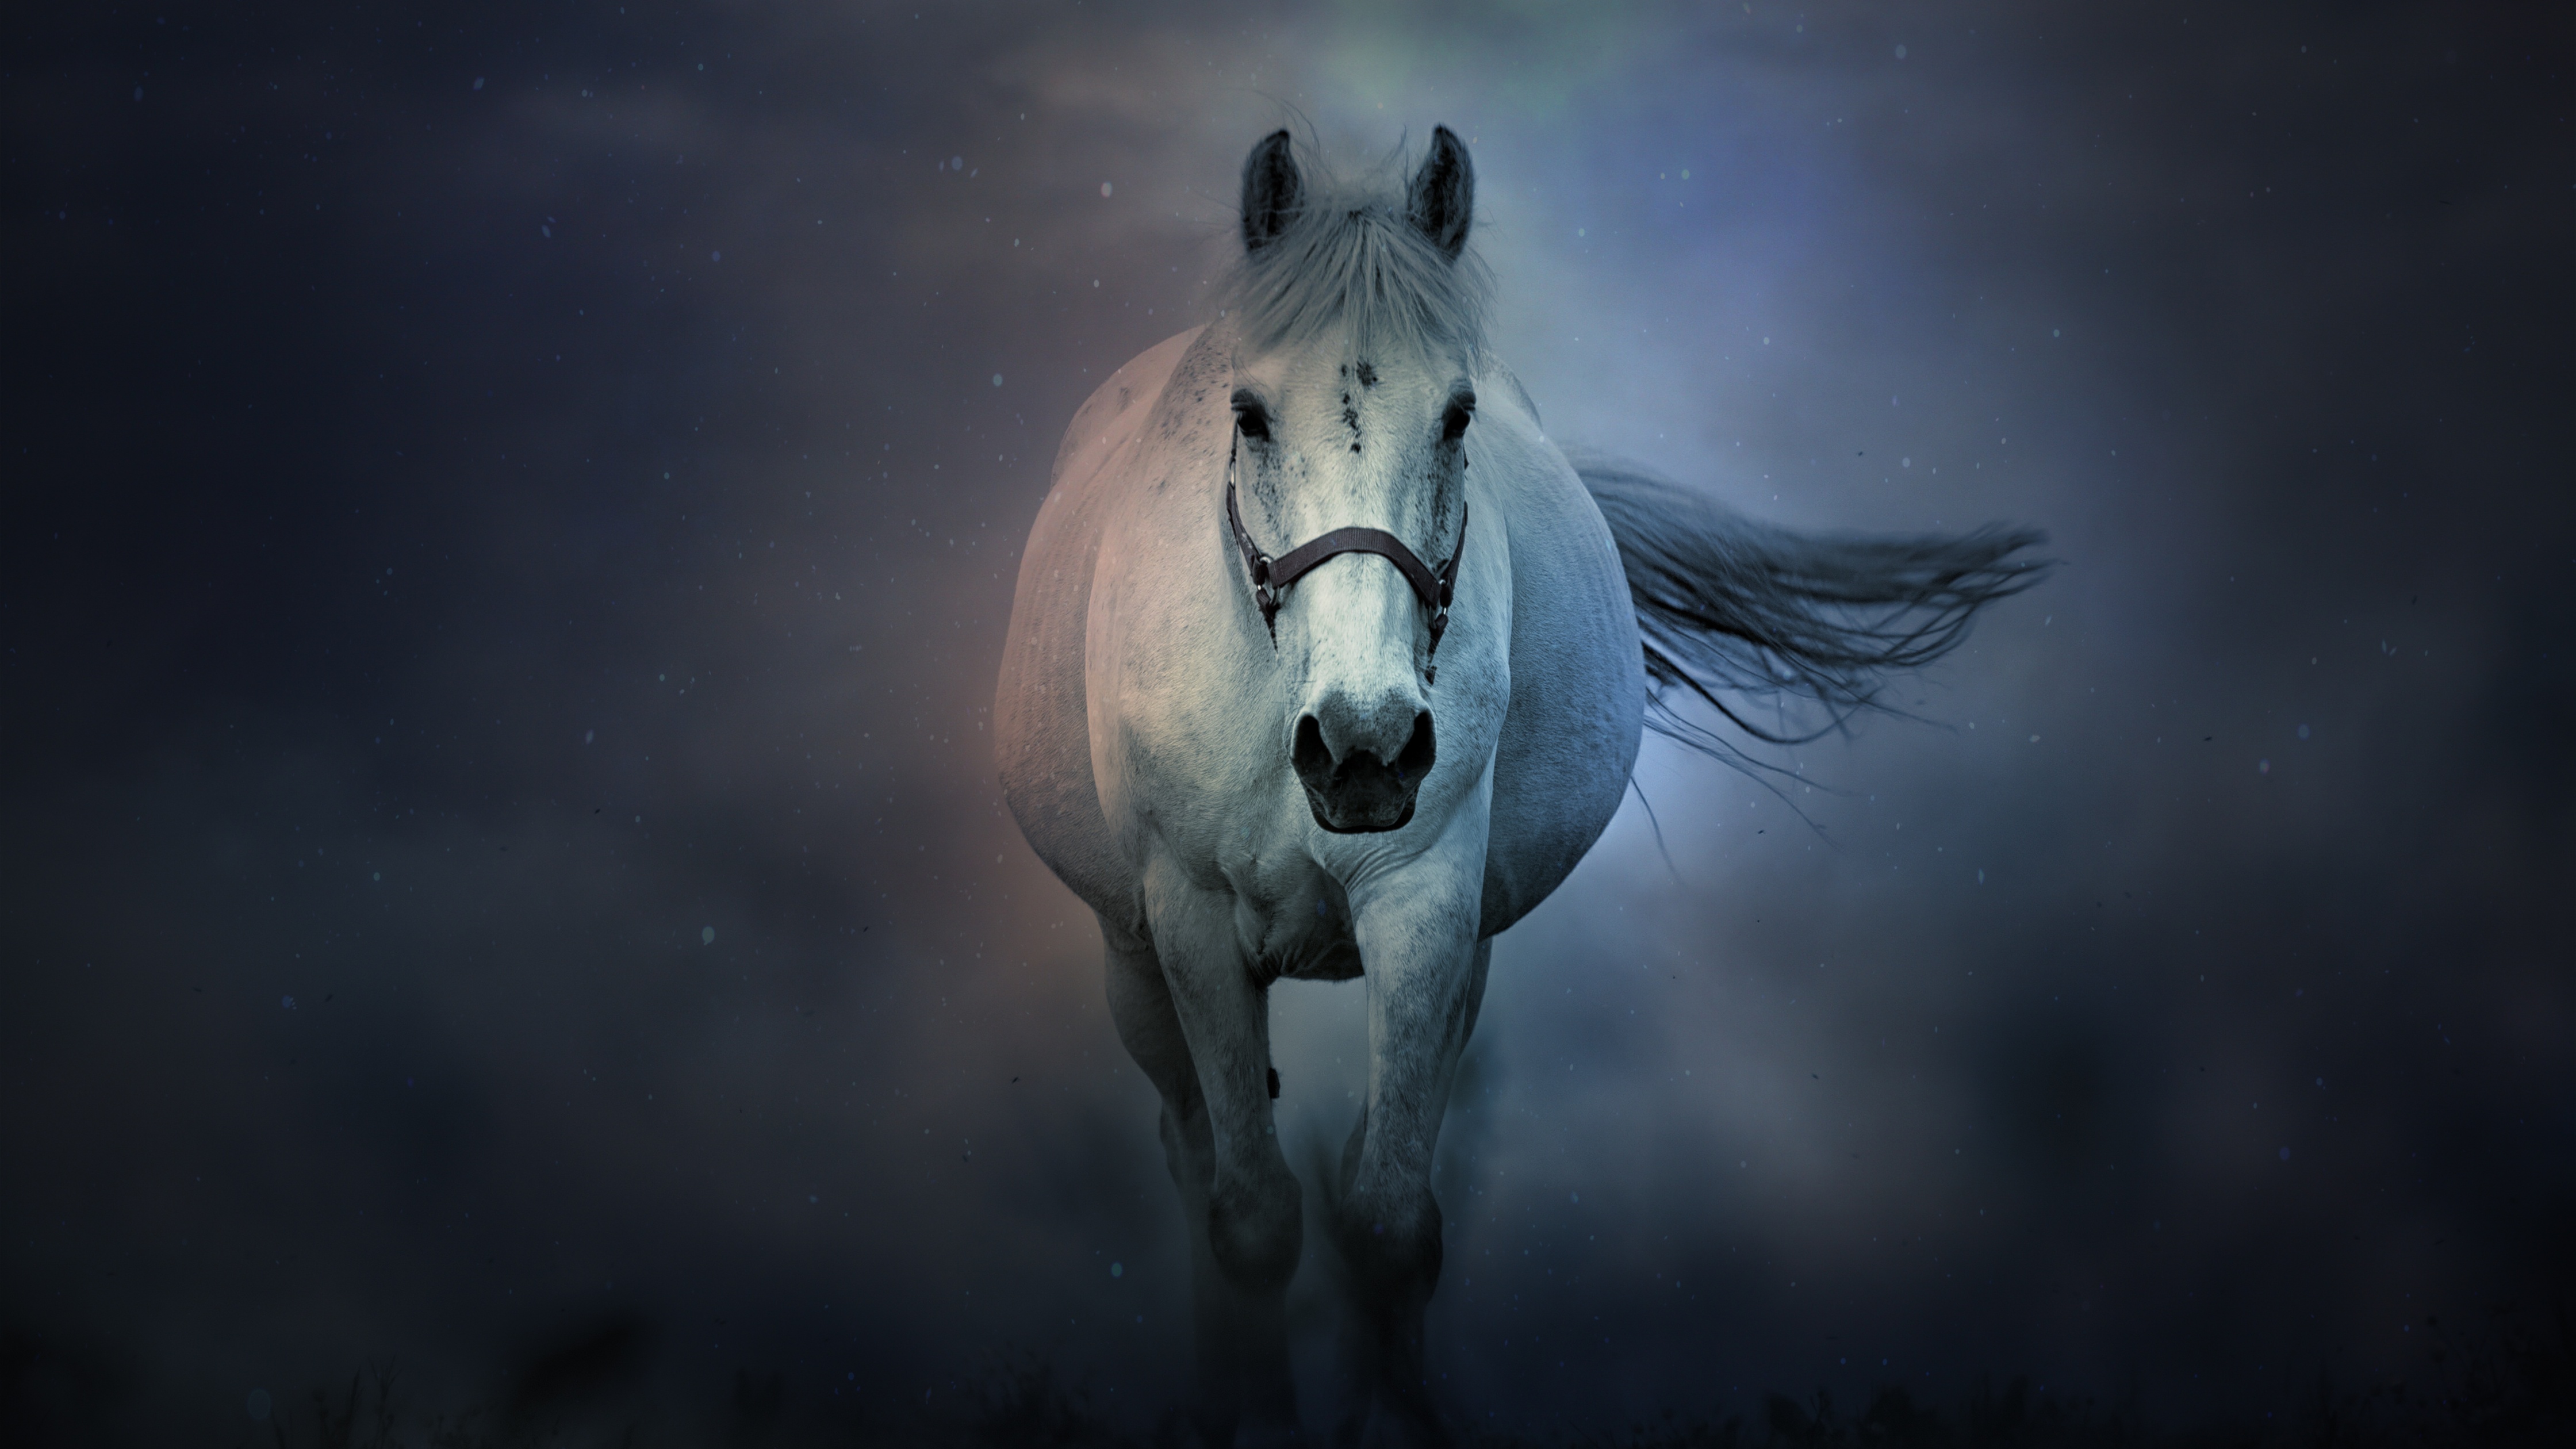 2000 Free White Horse  Horse Images  Pixabay